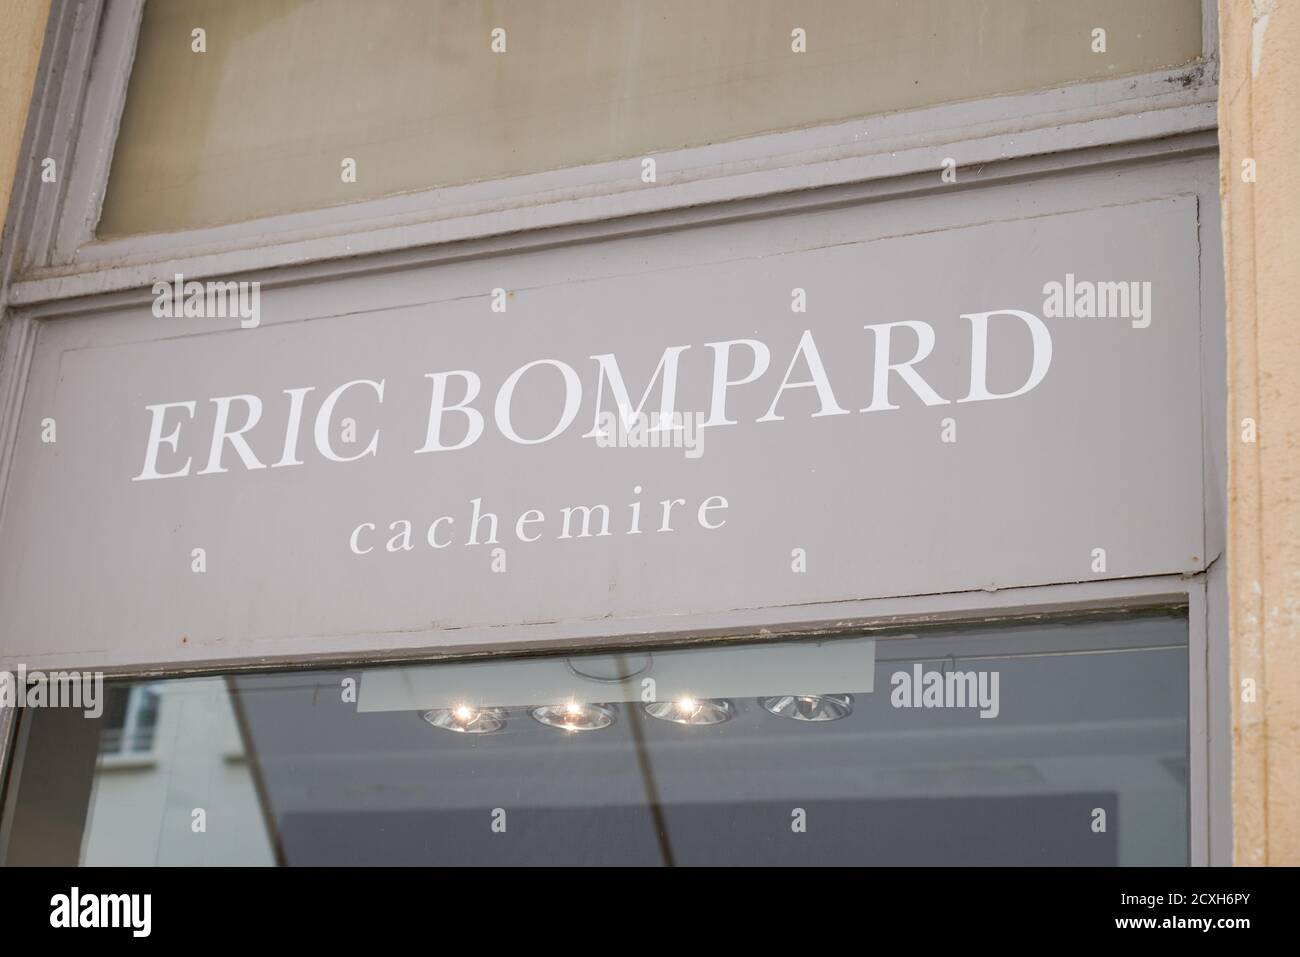 Bordeaux , Aquitaine / France - 09 25 2020 : logo Eric bompard et panneau de texte avant du magasin boutique Maison française du Cachemire Banque D'Images